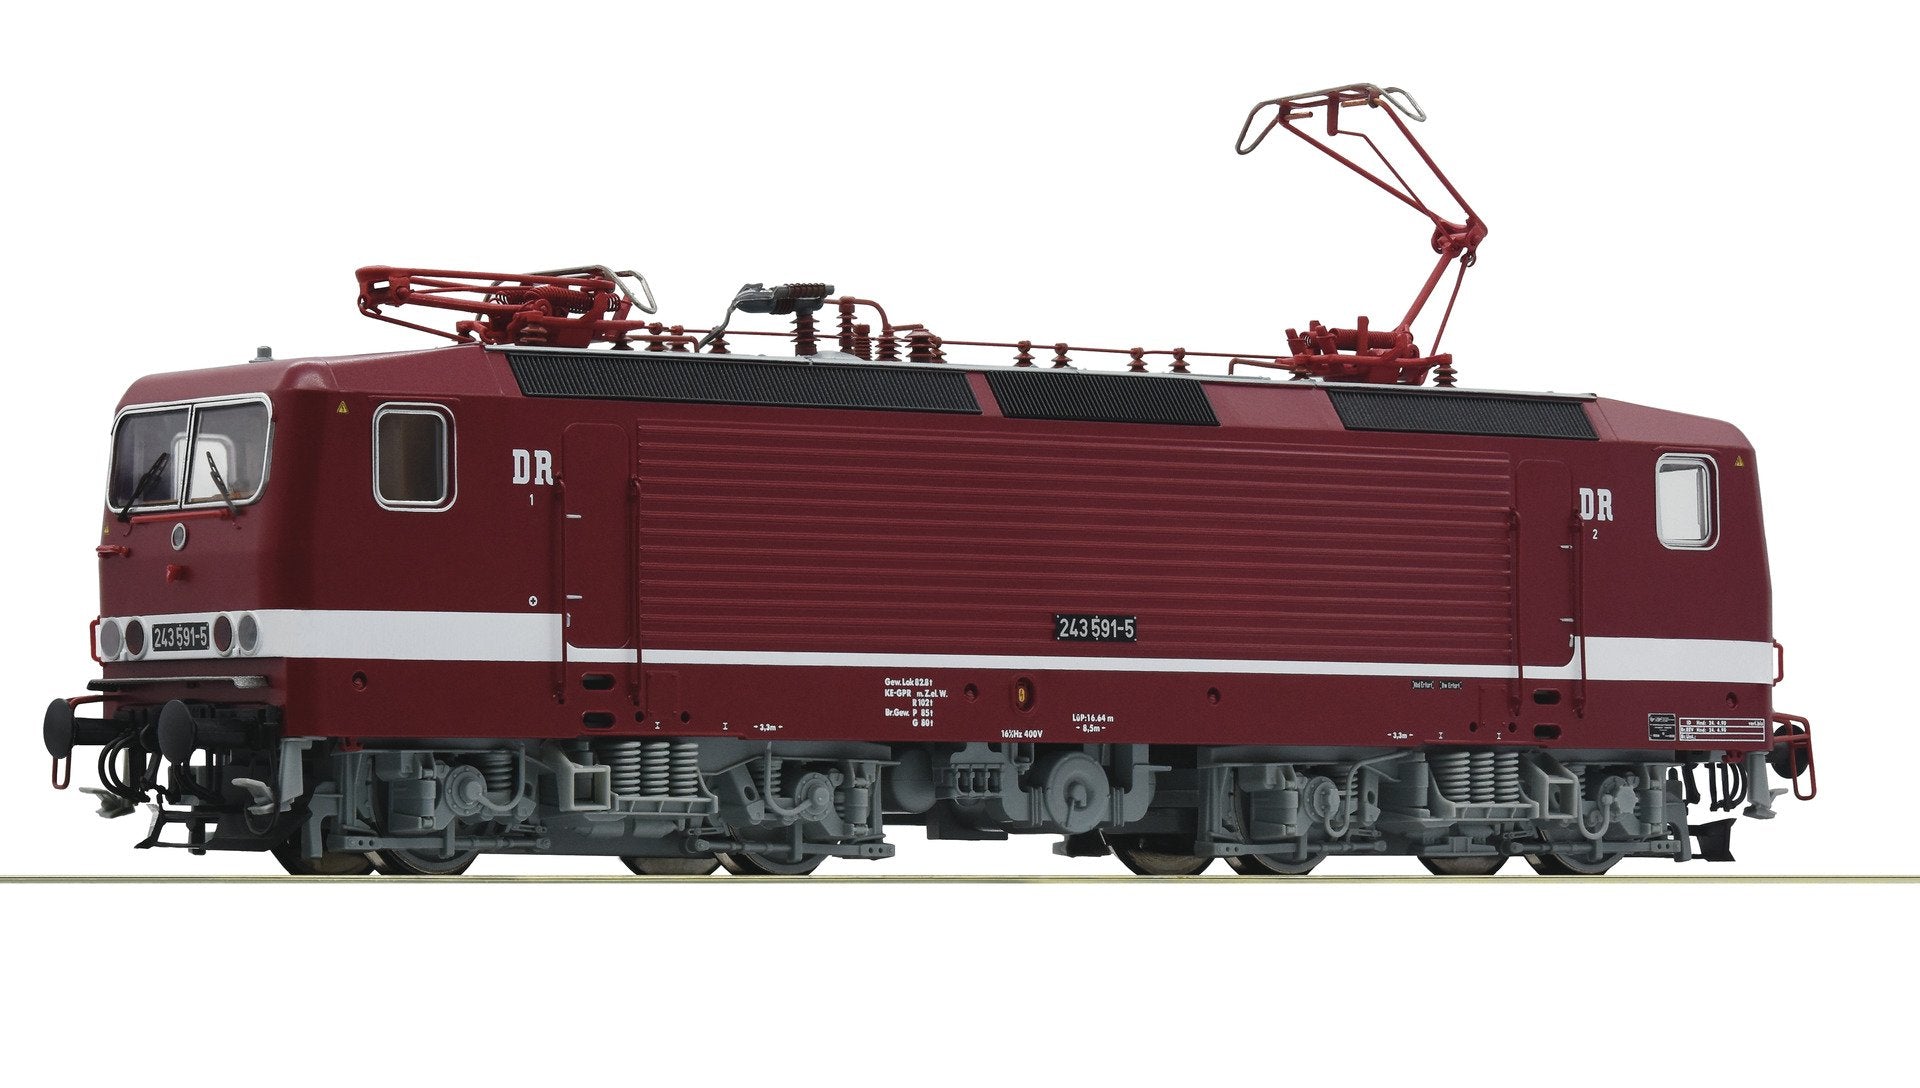 Roco 73063 H0 Electric locomotive 243 591-5, DR